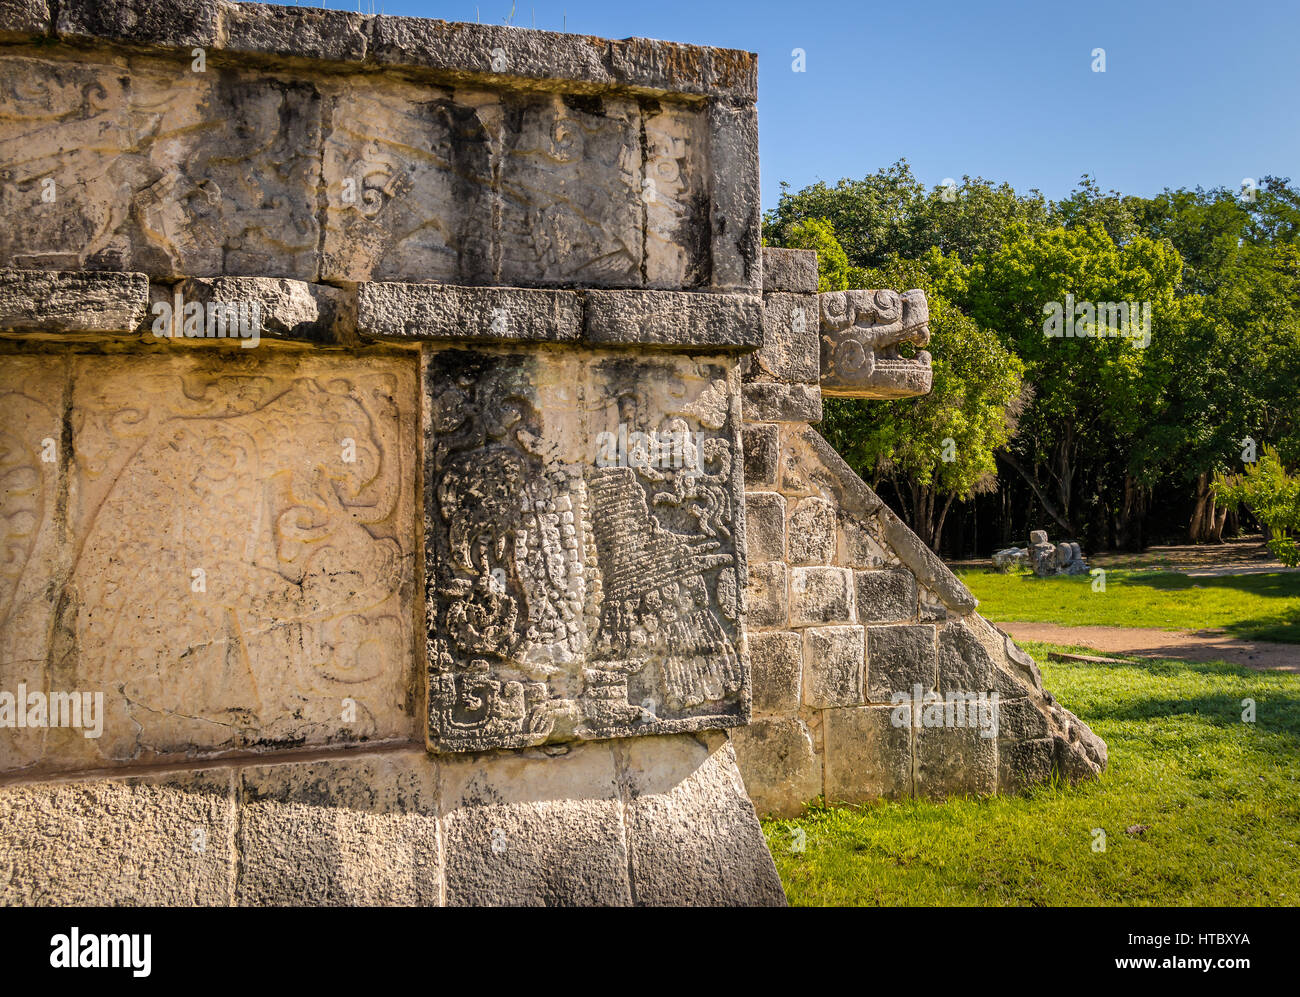 Jaguar heads of the Venus Platform at Ancient Maya Ruins of Chichen Itza - Yucatan, Mexico Stock Photo